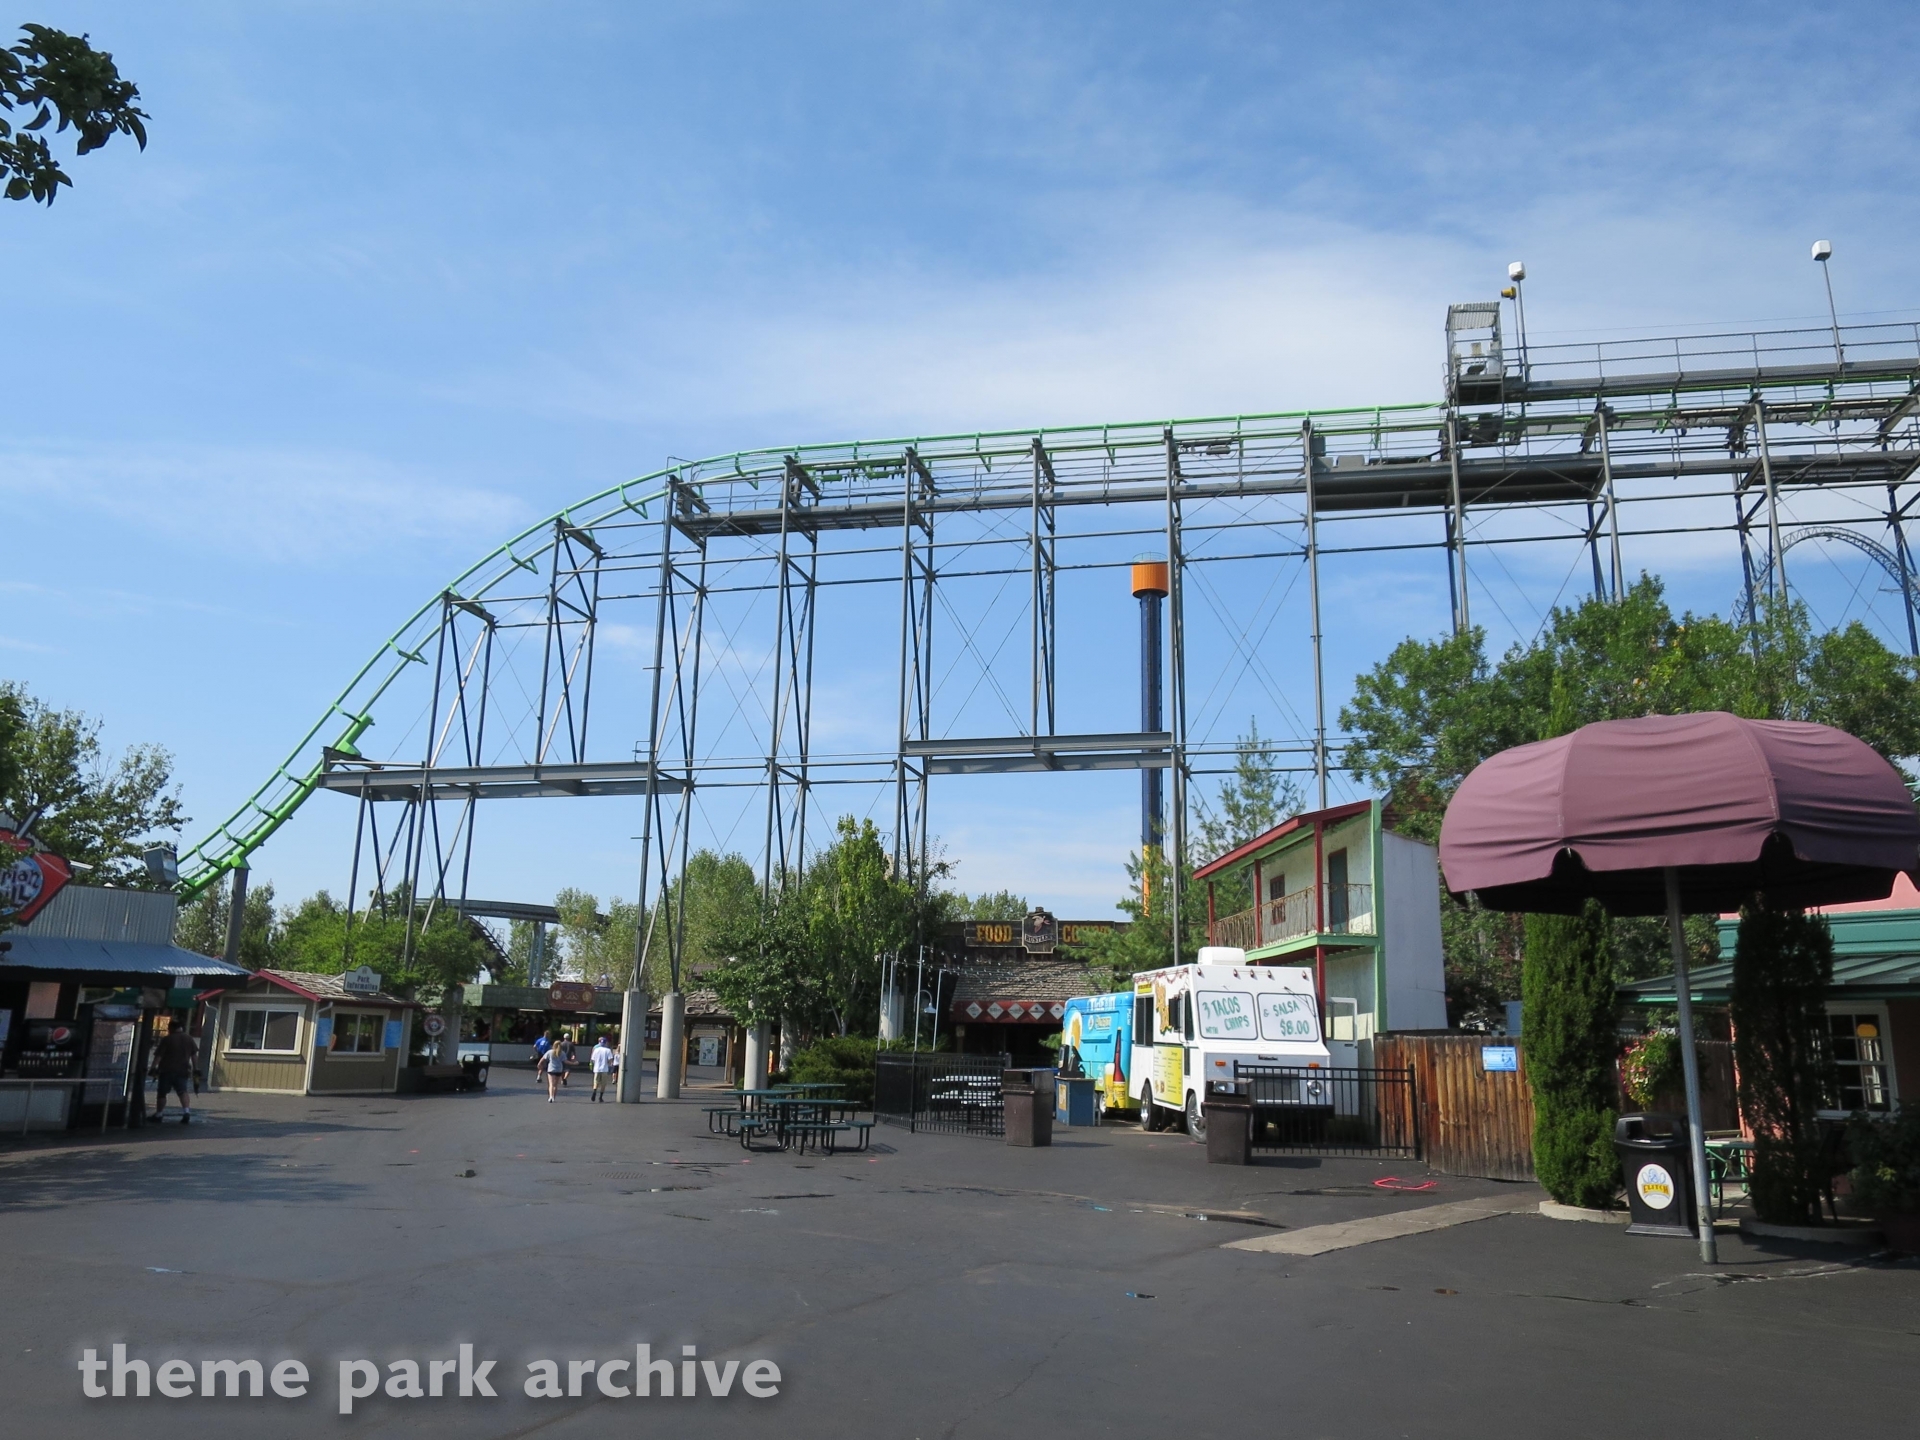 Elitch Gardens 2015 Theme Park Archive